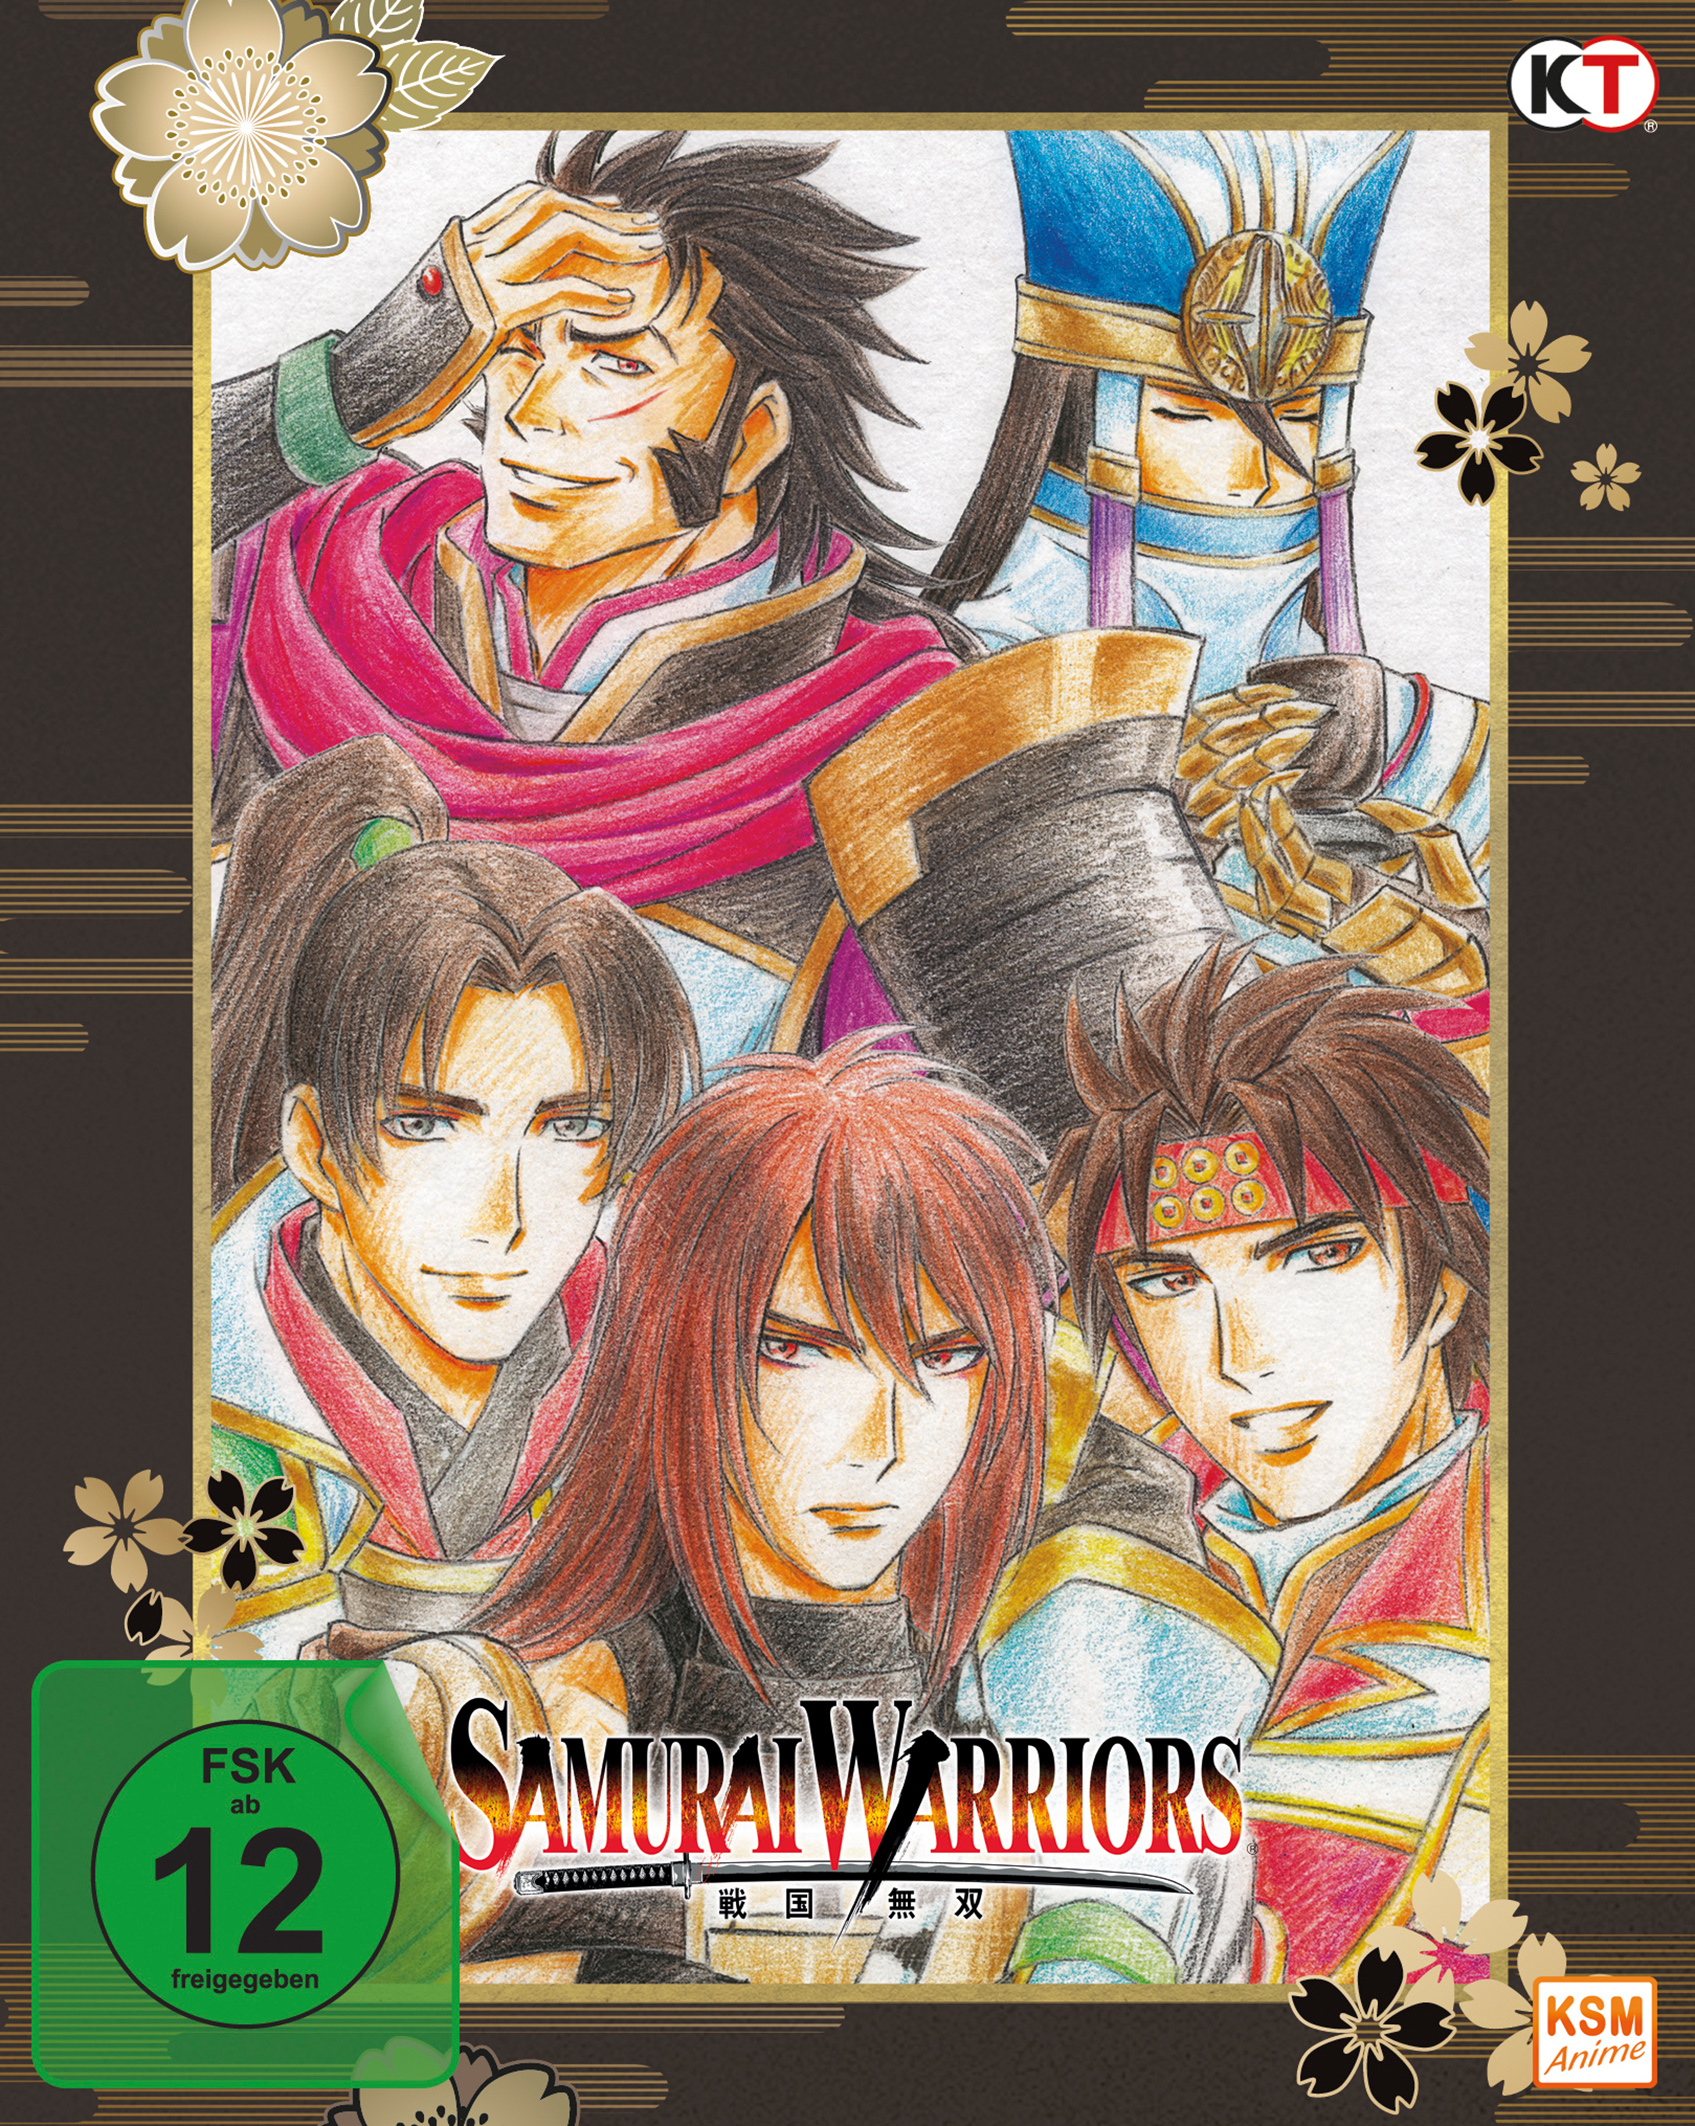 Samurai Warriors Die Sanada Movie Legende Blu-ray - von + BRs Ep.1-12 -3 Sp